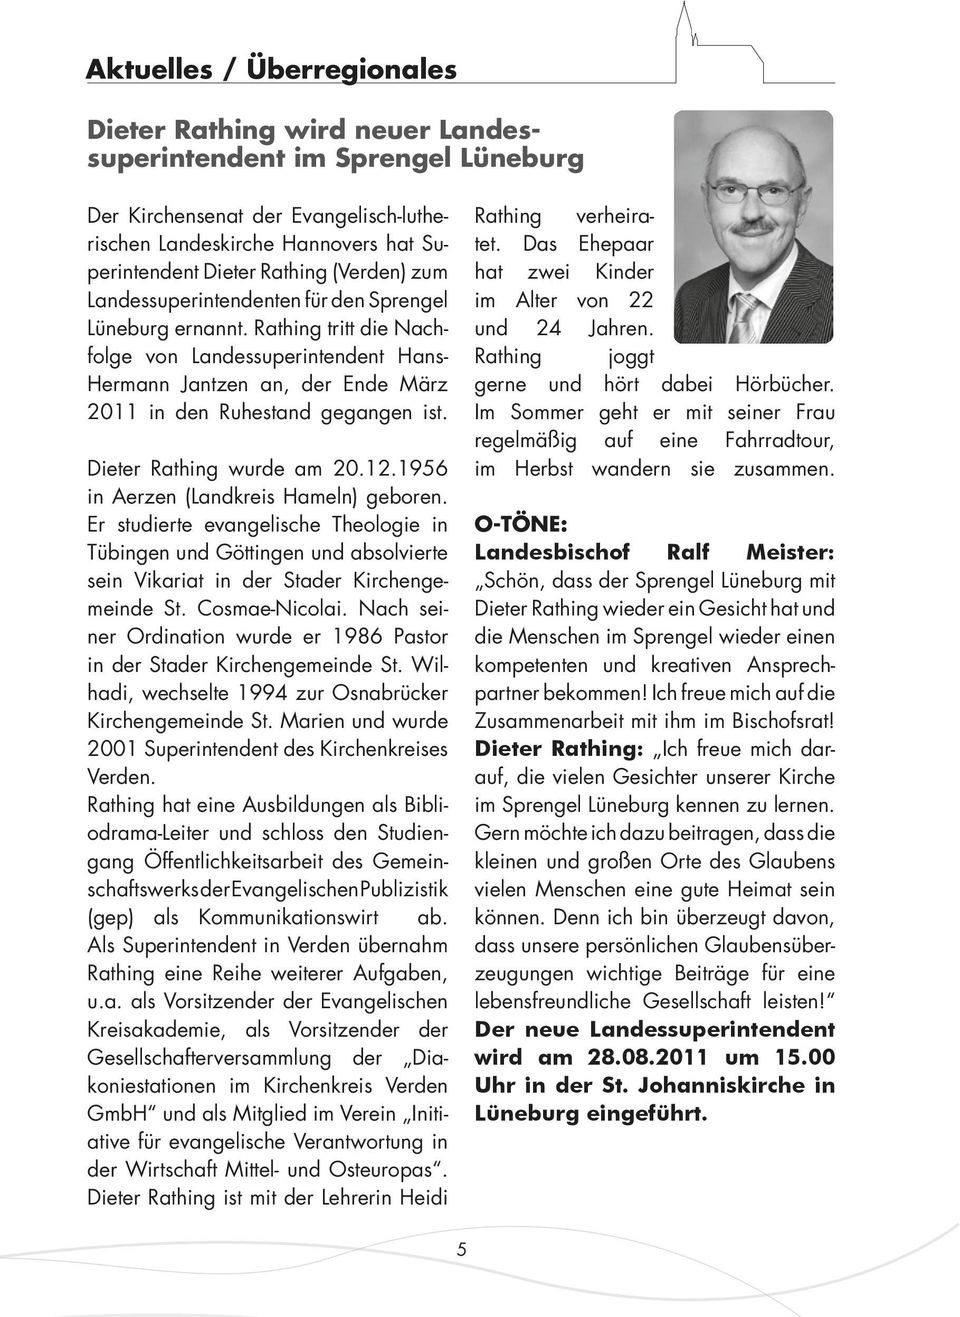 Dieter Rathing wurde am 20.12.1956 in Aerzen (Landkreis Hameln) geboren. Er studierte evangelische Theologie in Tübingen und Göttingen und absolvierte sein Vikariat in der Stader Kirchengemeinde St.